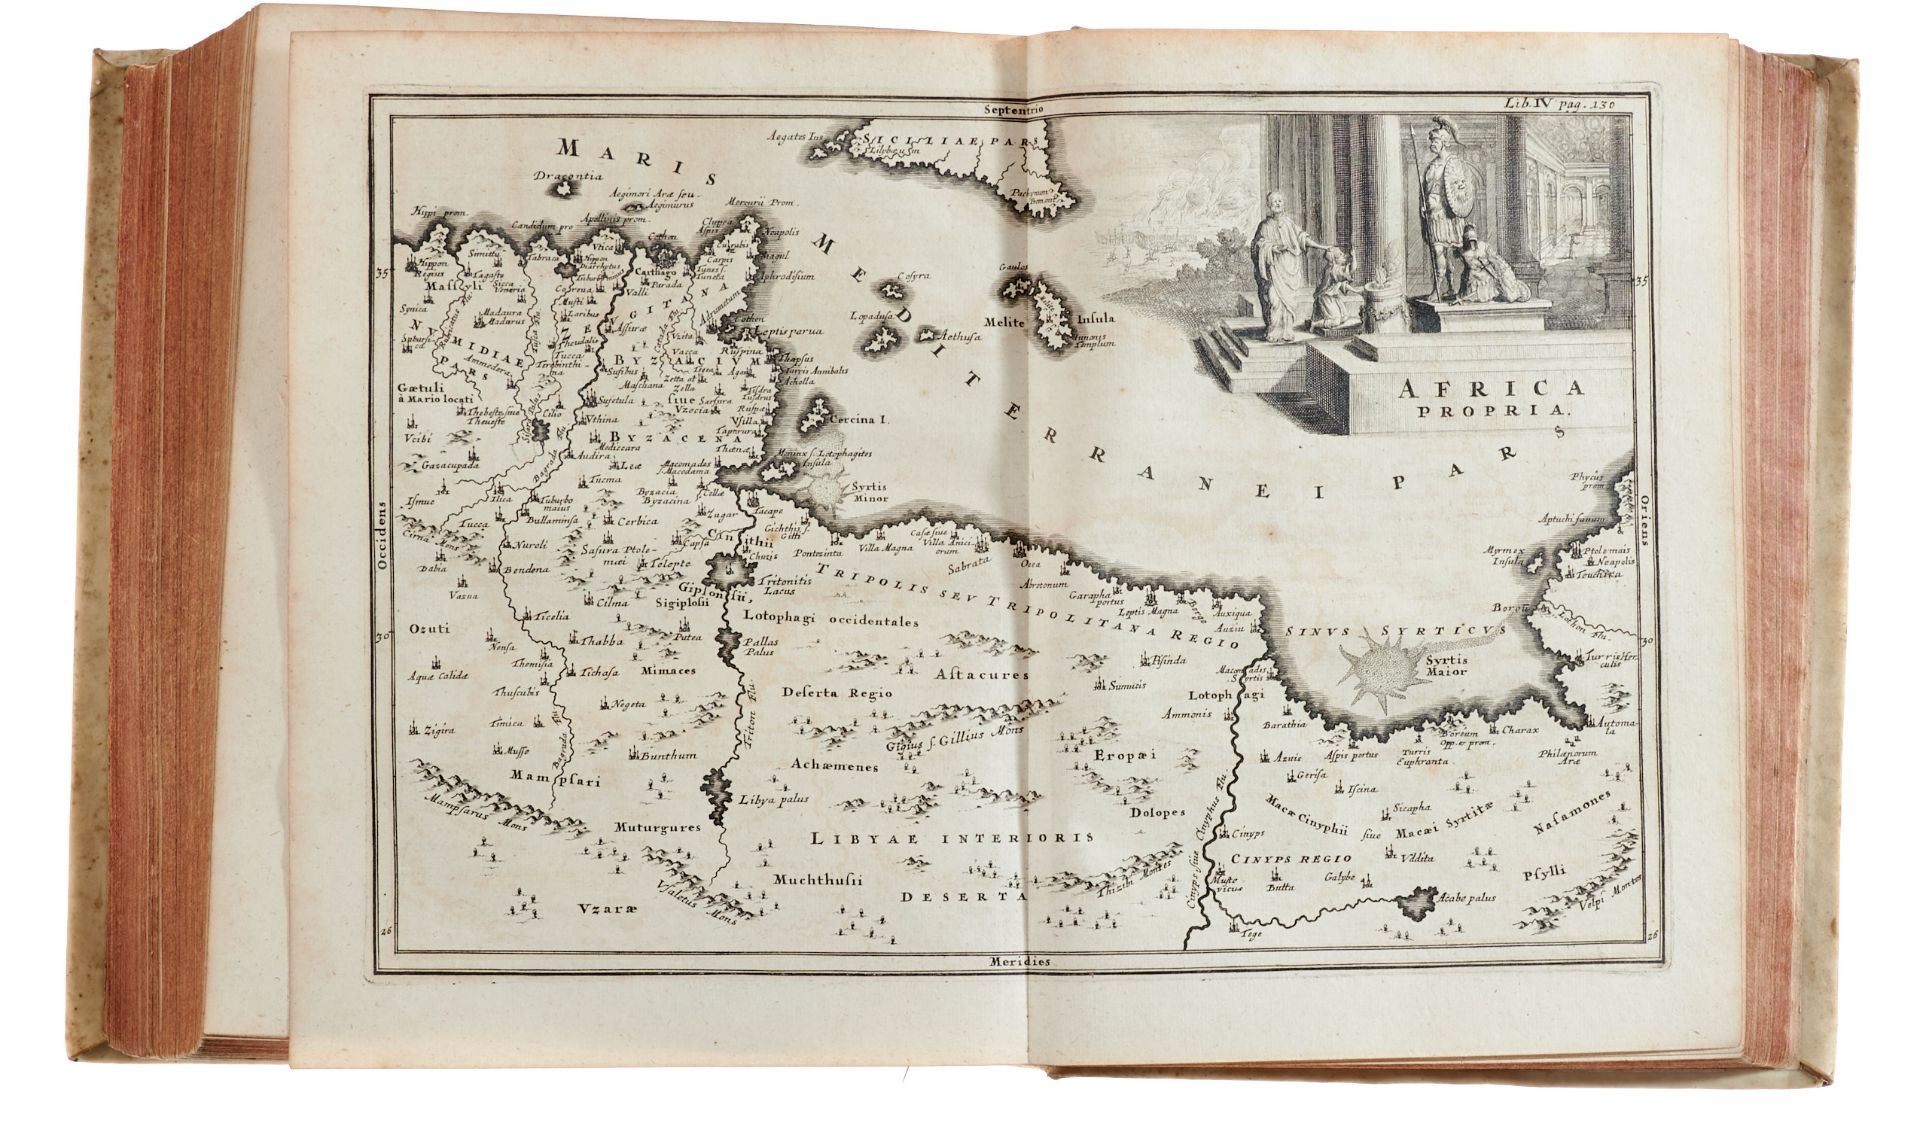 Asien Afrika Cellarius, Ch., Notitiae orbis antiqui, sive geographia plenioris. Tomus alter. 2 - Image 4 of 4